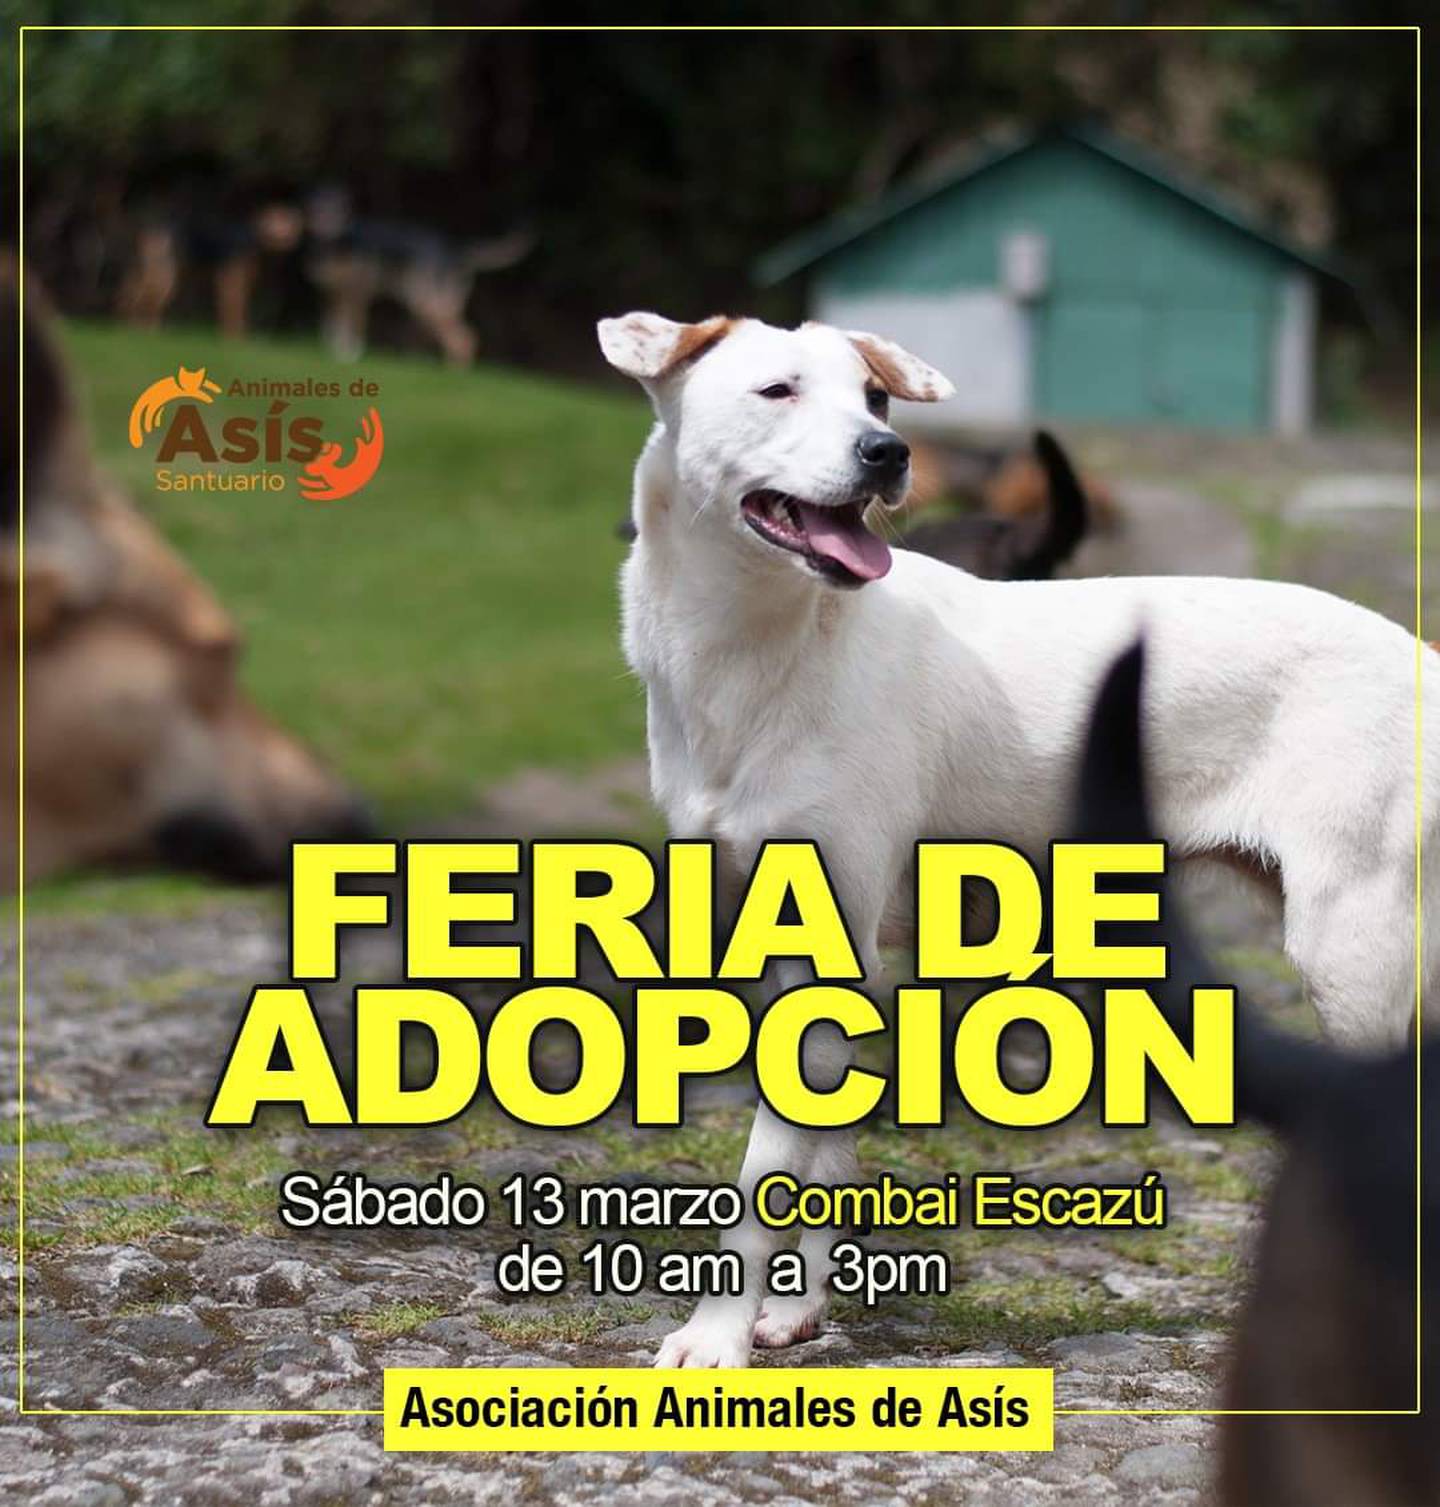 Adopción de perros, Asociación Animales de Asís